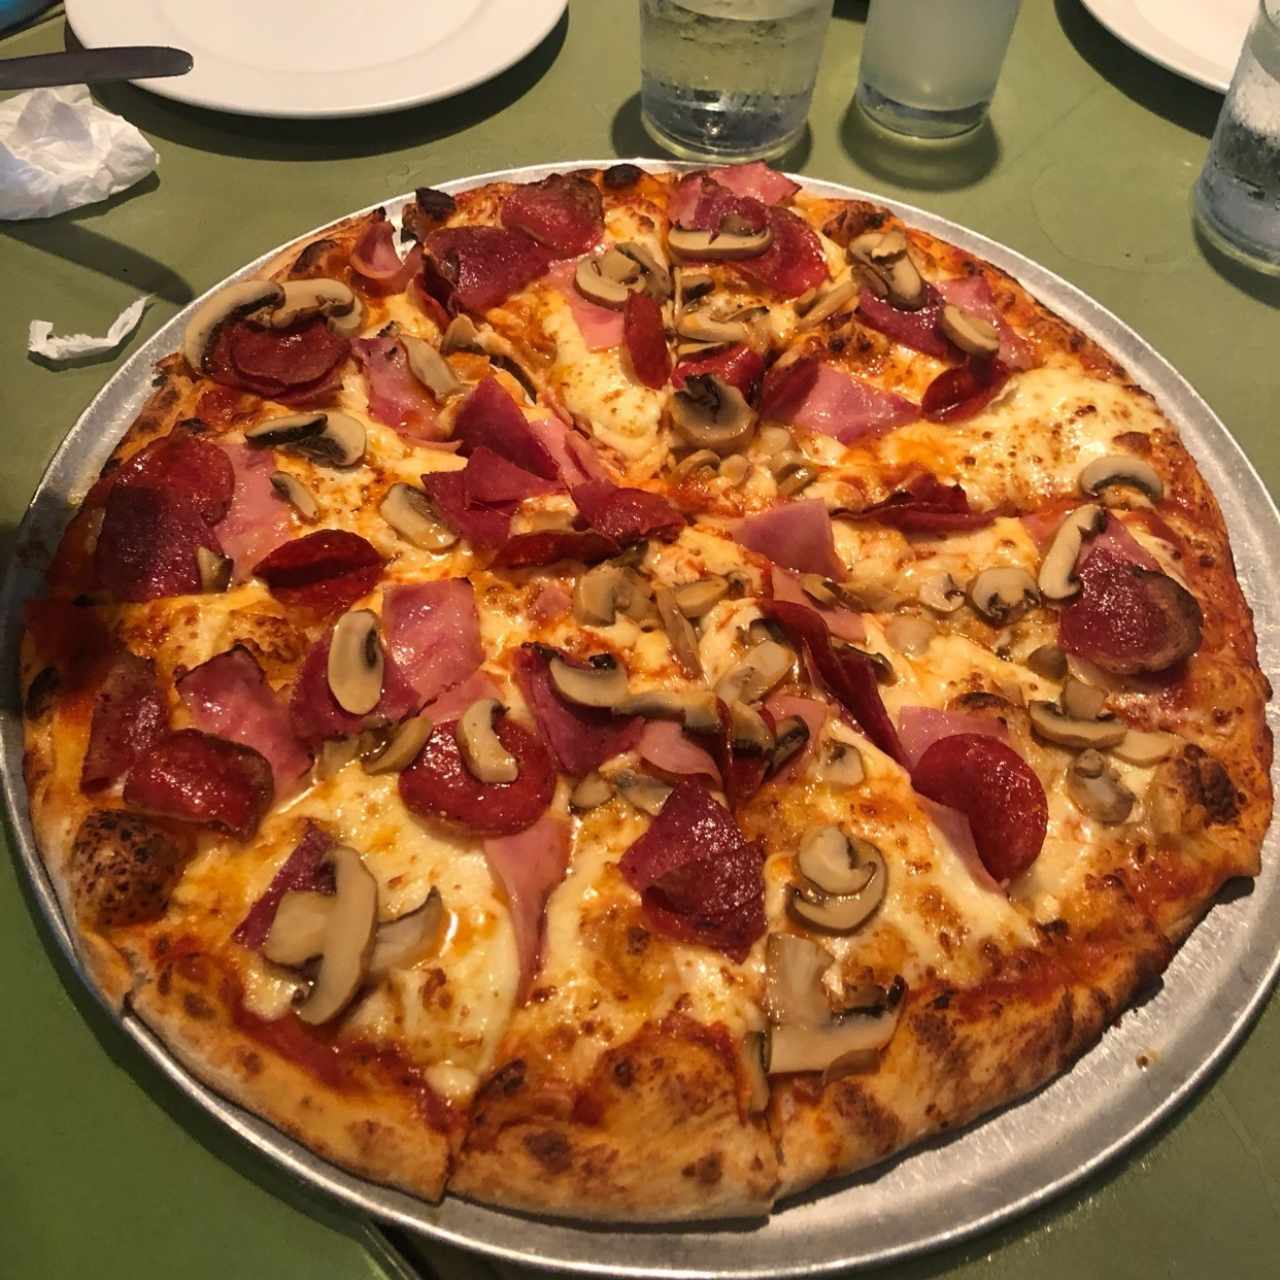 pizza Napoli